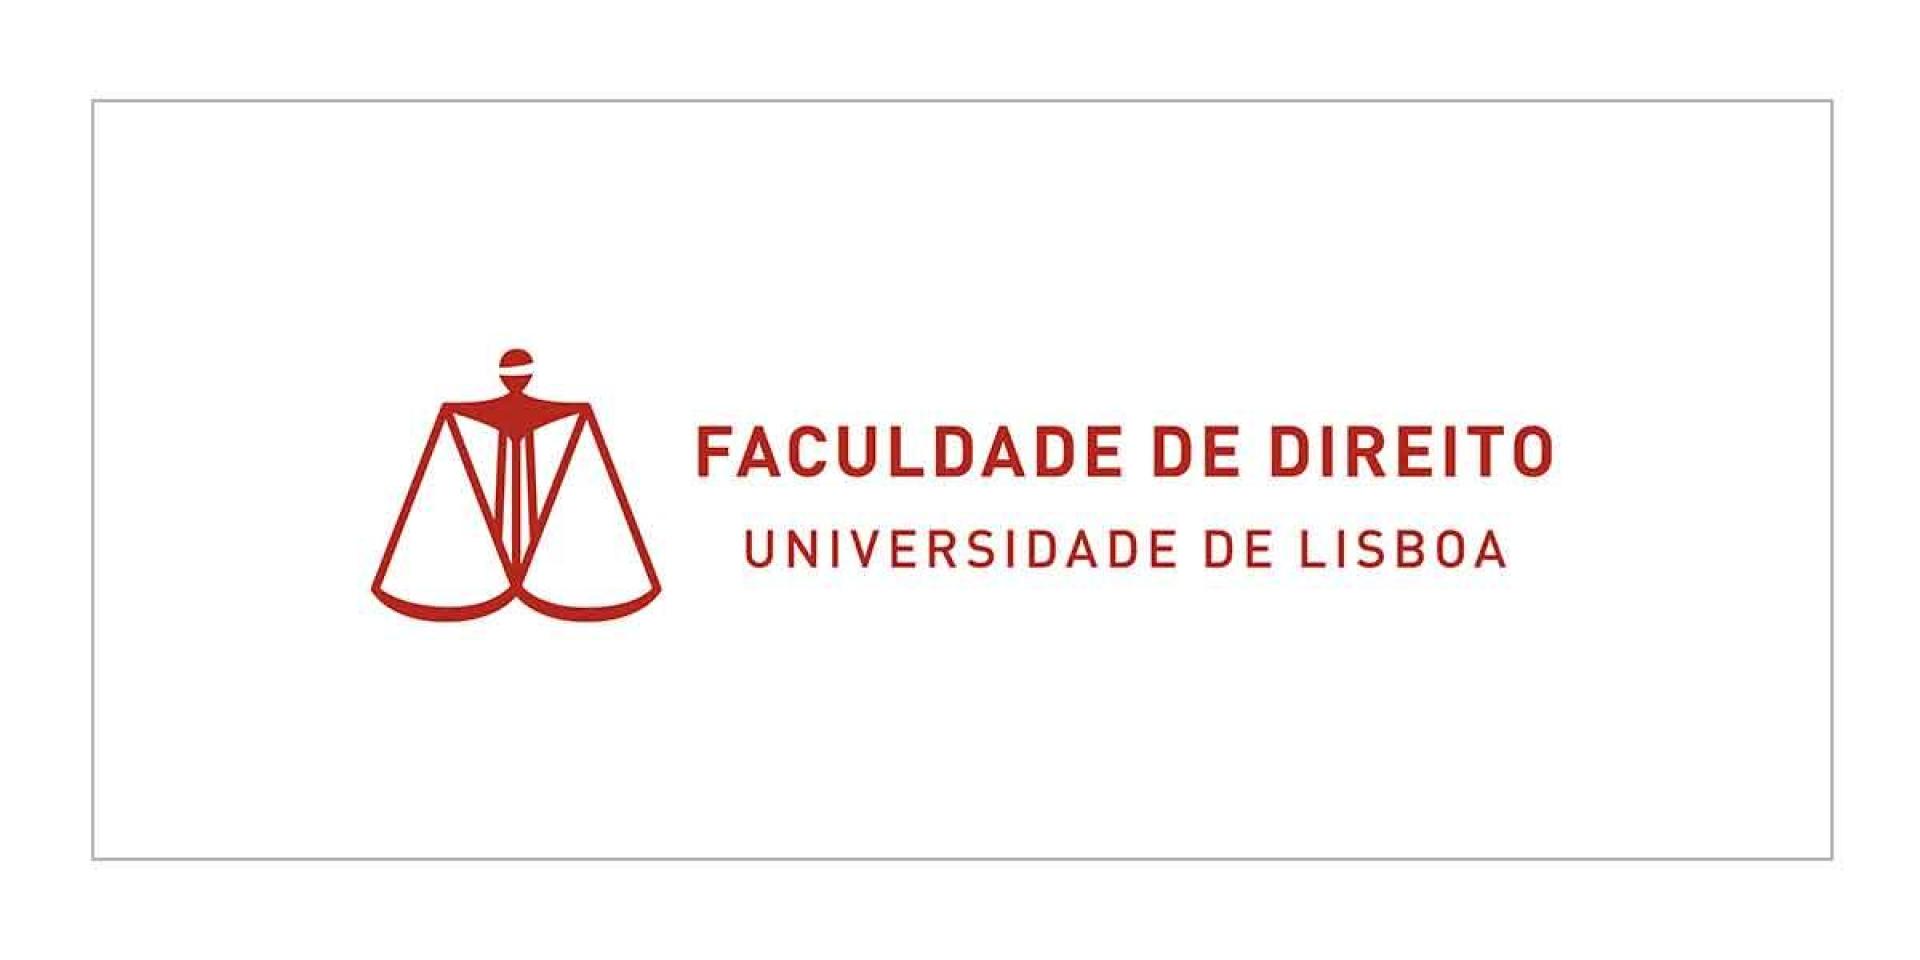 Faculdade de Direito | Universidade de Lisboa